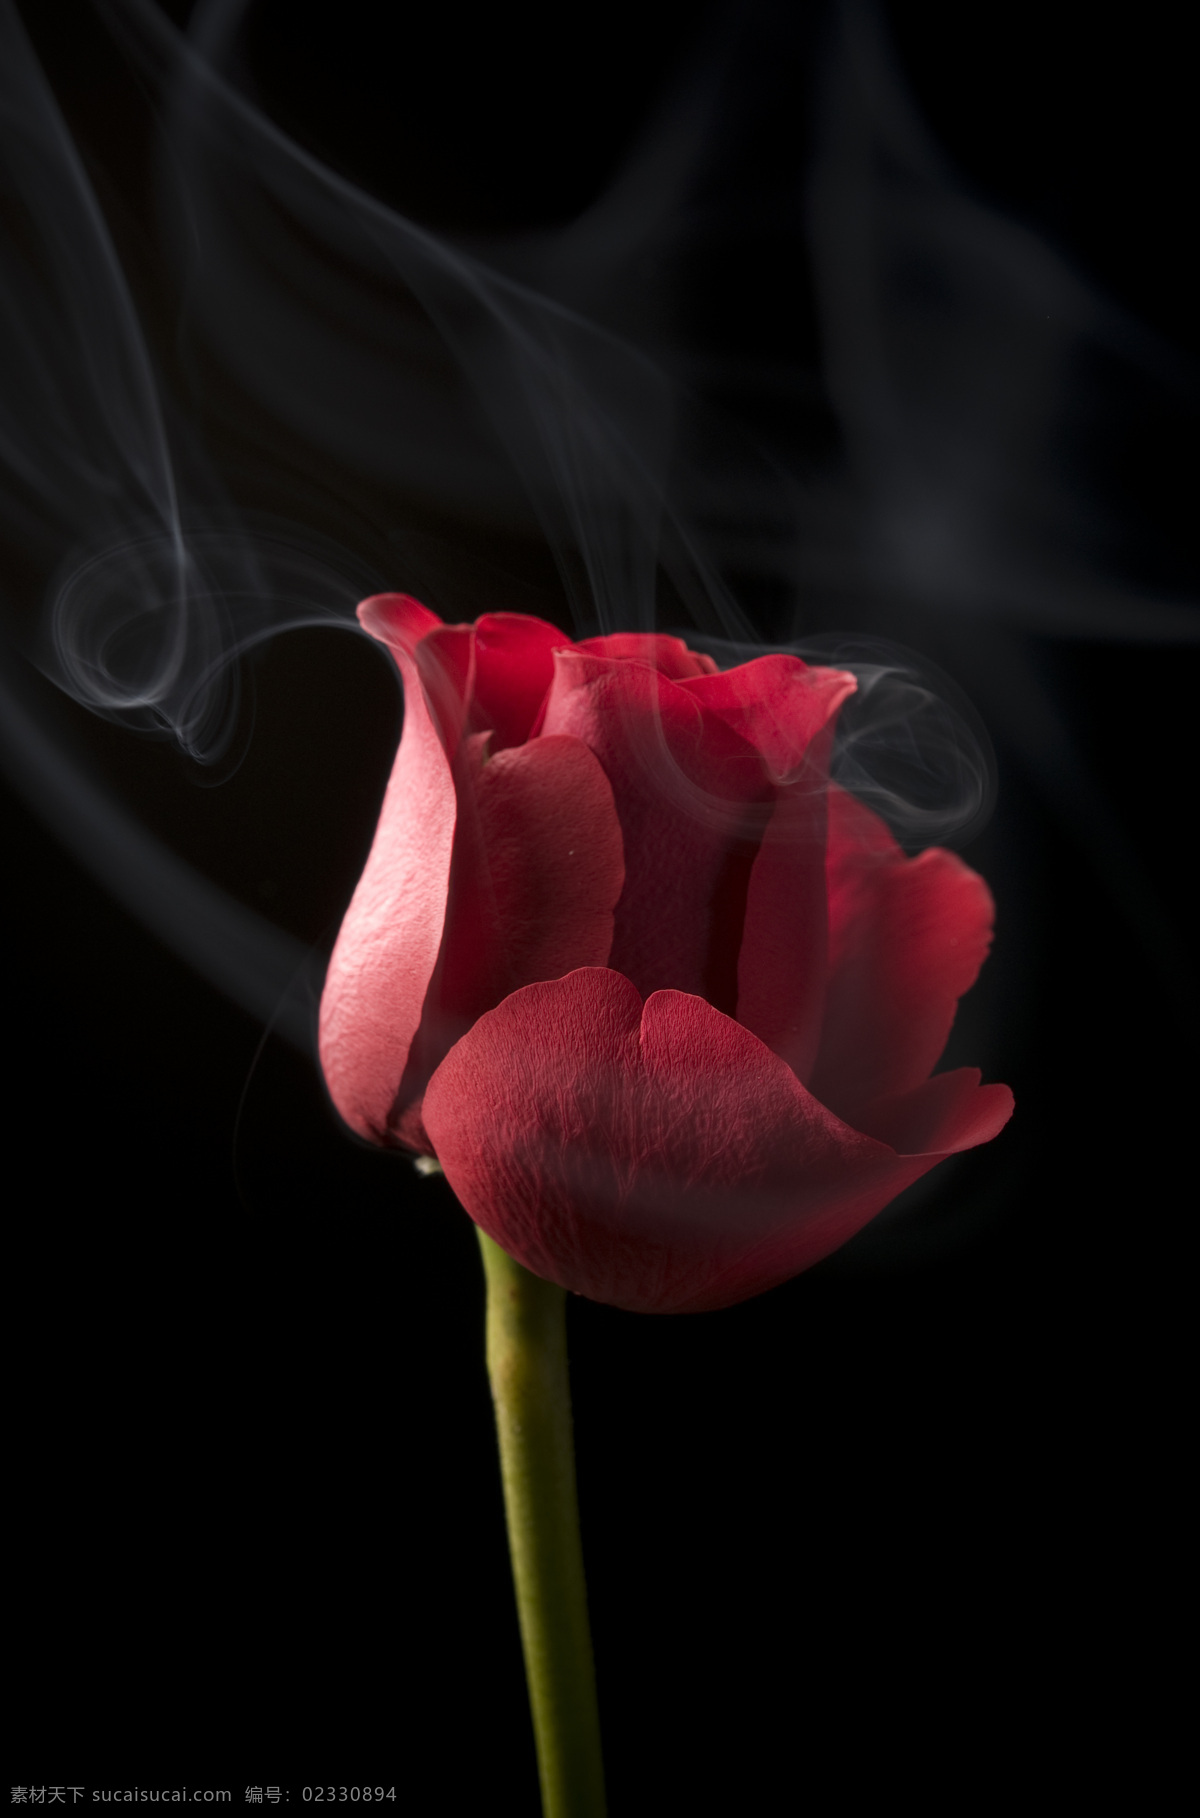 玫瑰花 高清 玫瑰 鲜花 红玫瑰 花束 红花绿叶 玫瑰特写 烟雾 烟雾缭绕 动感烟雾 微距 情人礼物 情人节素材 花朵 红花 花草 花草高清图片 生物世界